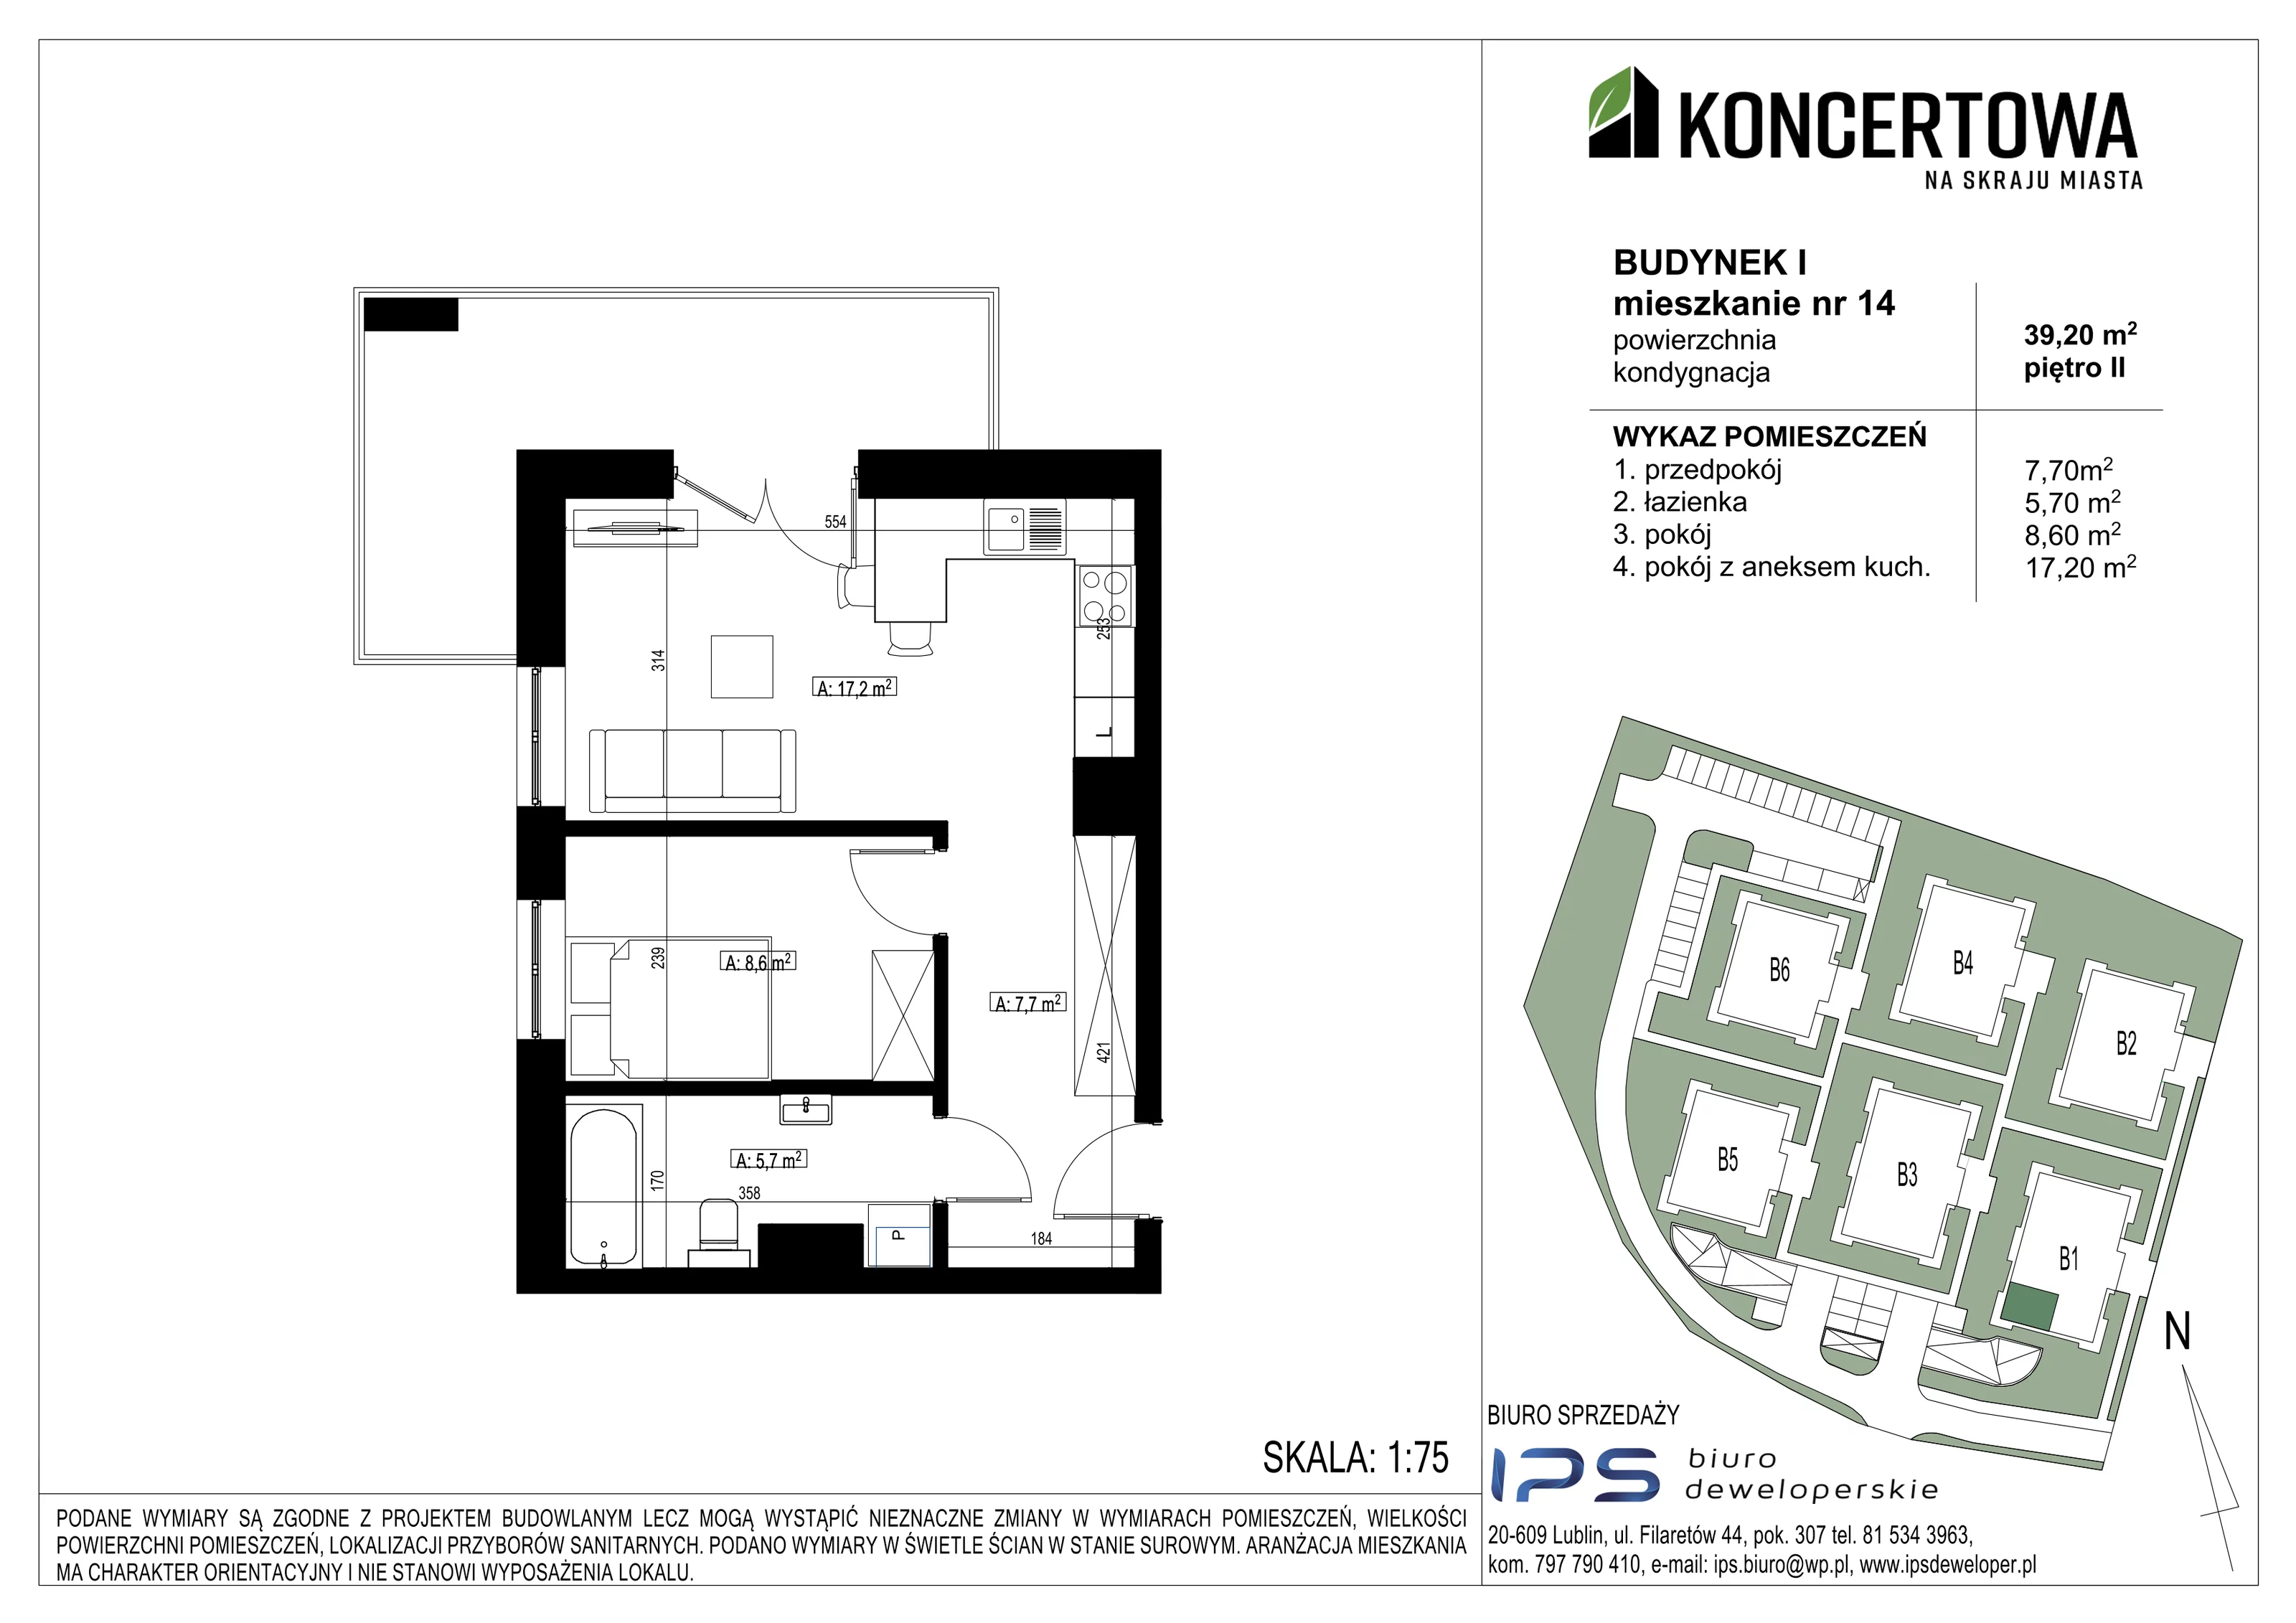 Mieszkanie 39,20 m², piętro 2, oferta nr 2_I/14, KONCERTOWA - Na skraju miasta, Lublin, Czechów Północny, Czechów Północny,  ul. Koncertowa